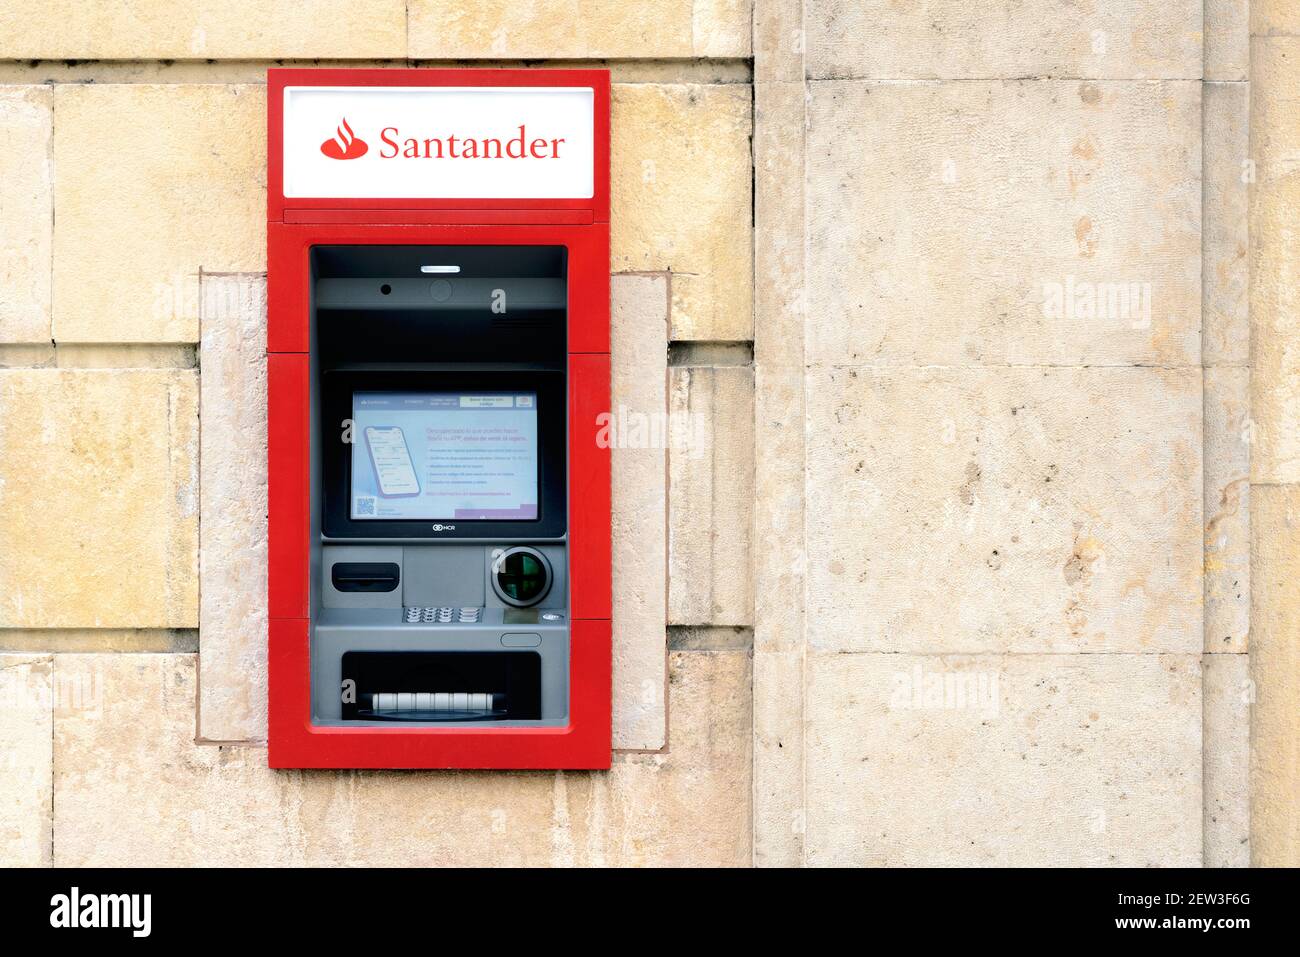 Guichet automatique de la banque Santander dans la ville.détail de Santander office Bank.vue extérieure de la succursale de Santander Banque D'Images